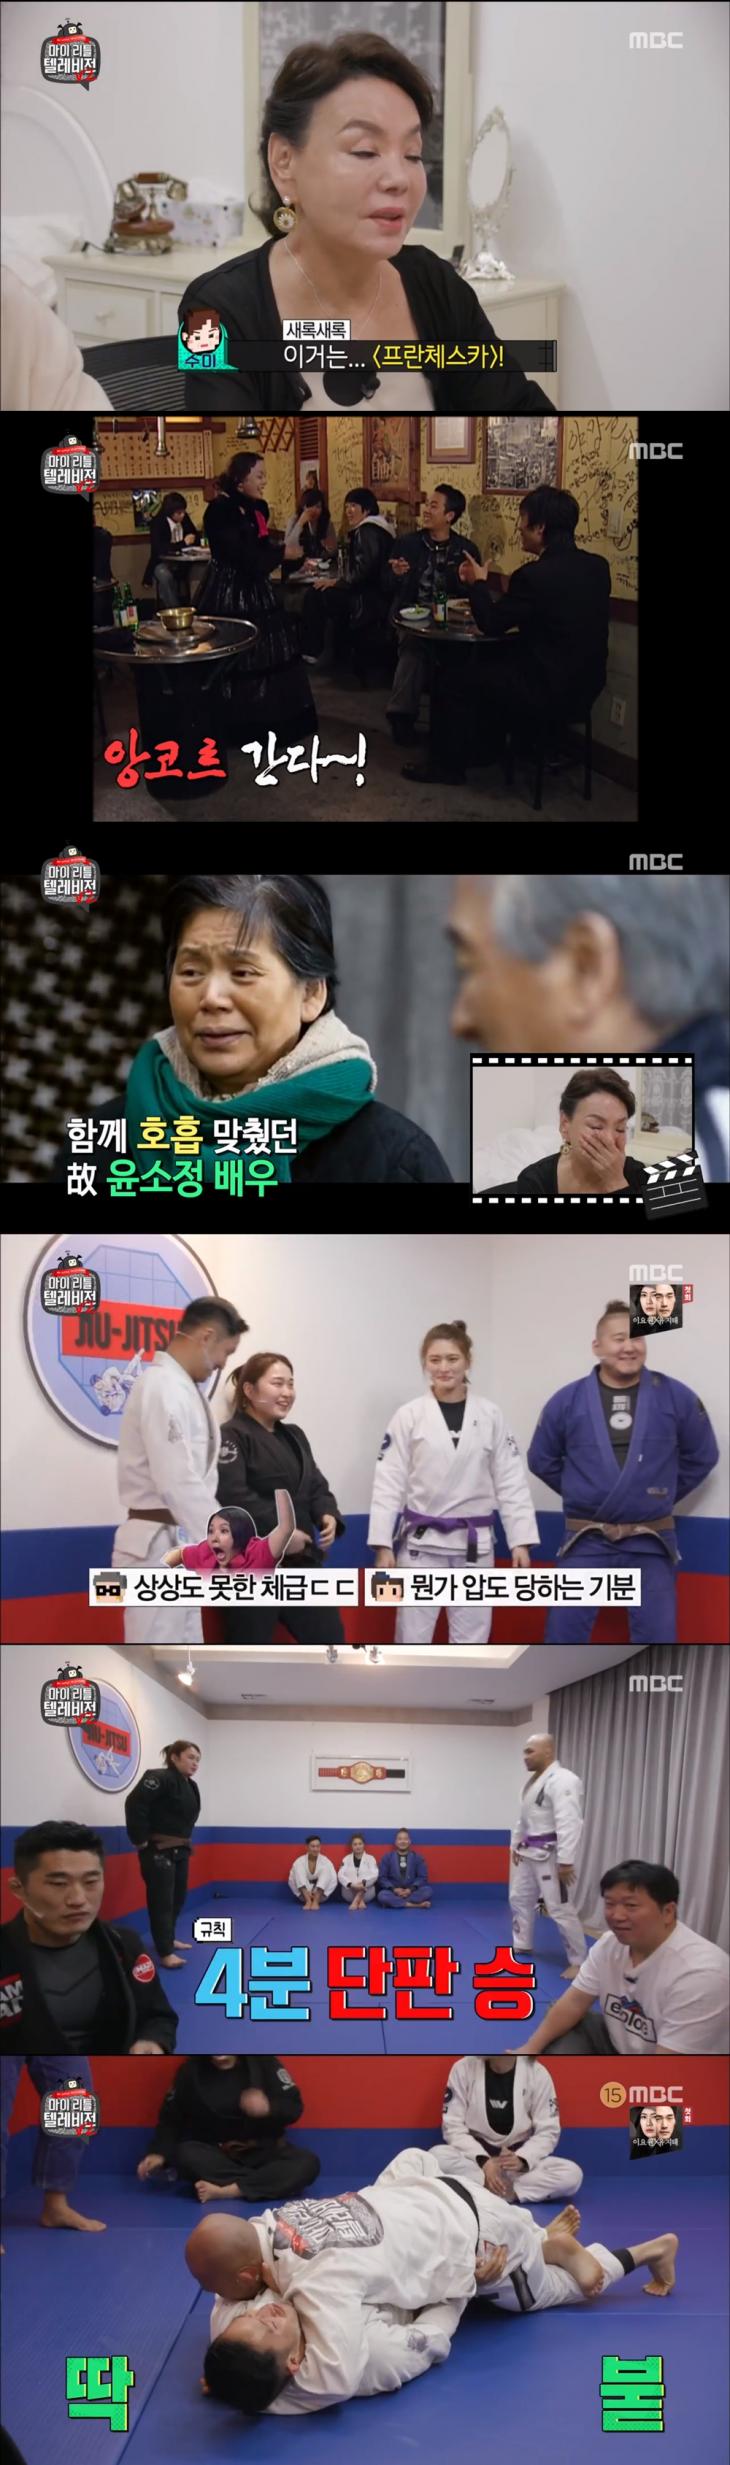 MBC '마이 리틀 텔레비전 V2' 방송 캡쳐